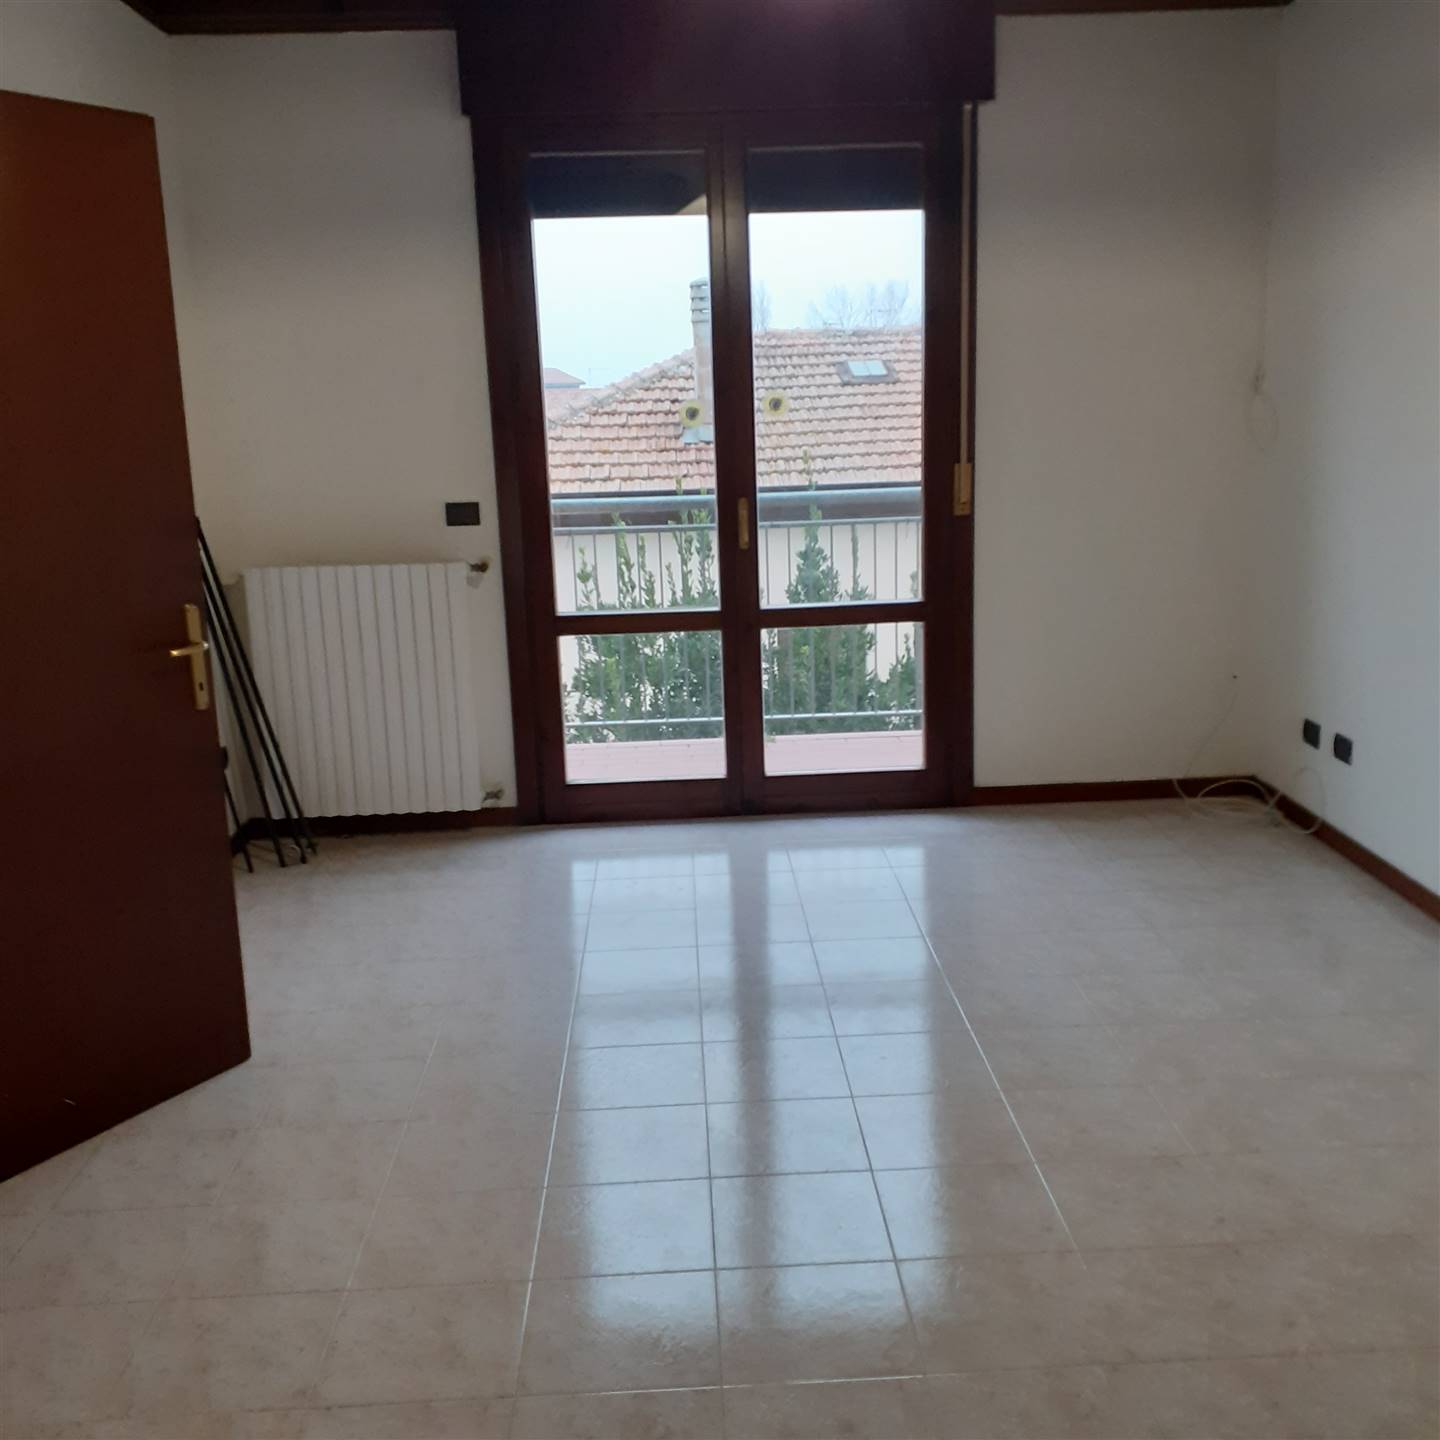 Appartamento in vendita a Poggio Rusco, 3 locali, prezzo € 100.000 | PortaleAgenzieImmobiliari.it